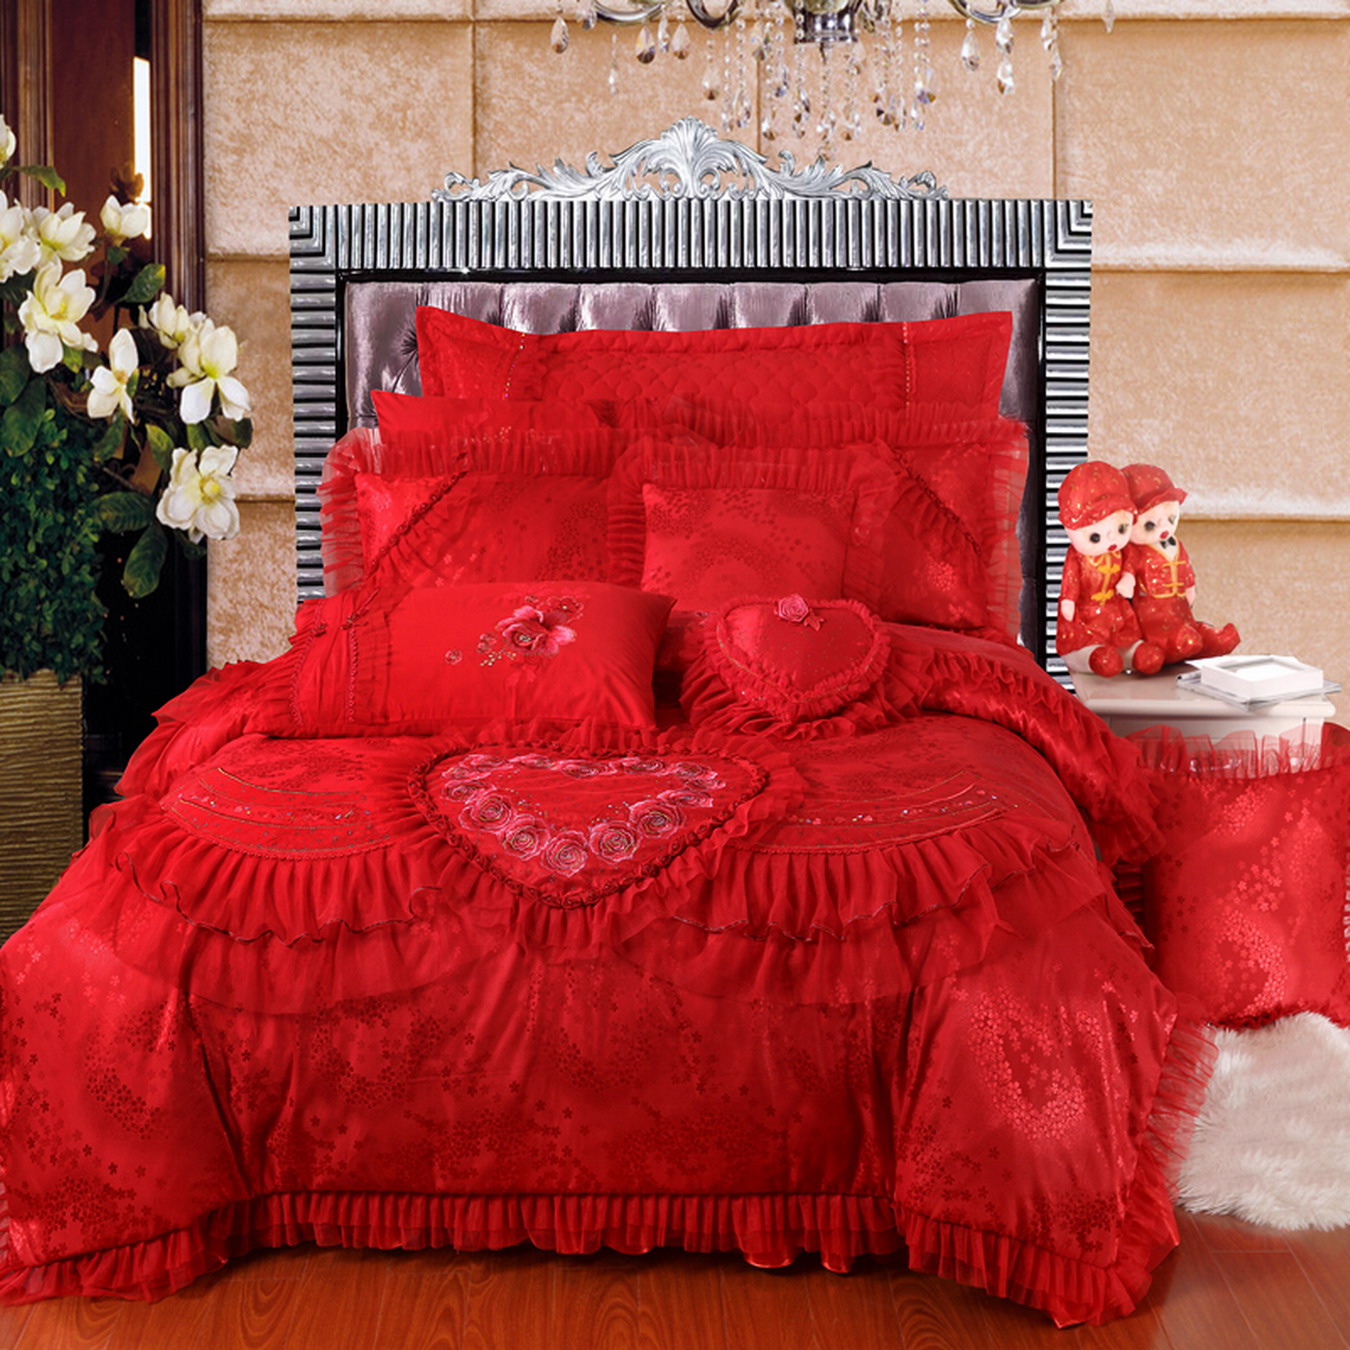 心心相印大红刺绣蕾丝花边婚庆床上用品四件套，专柜品质特价包邮